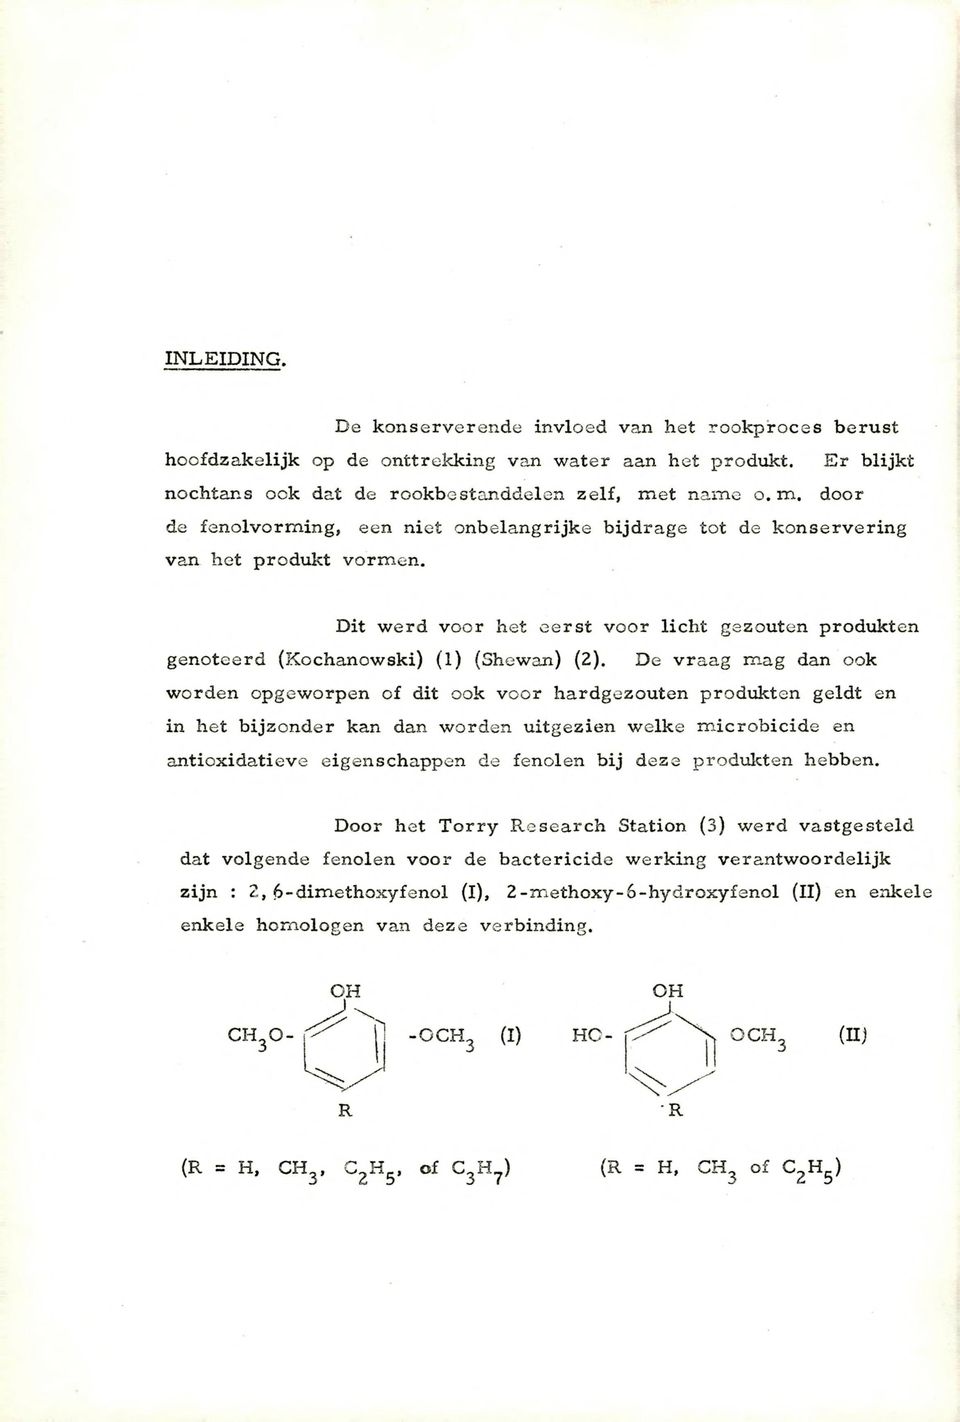 Dit werd voor het eerst voor licht gezouten produkten genoteerd (Kochanowski) (1) (Shewan) (2).